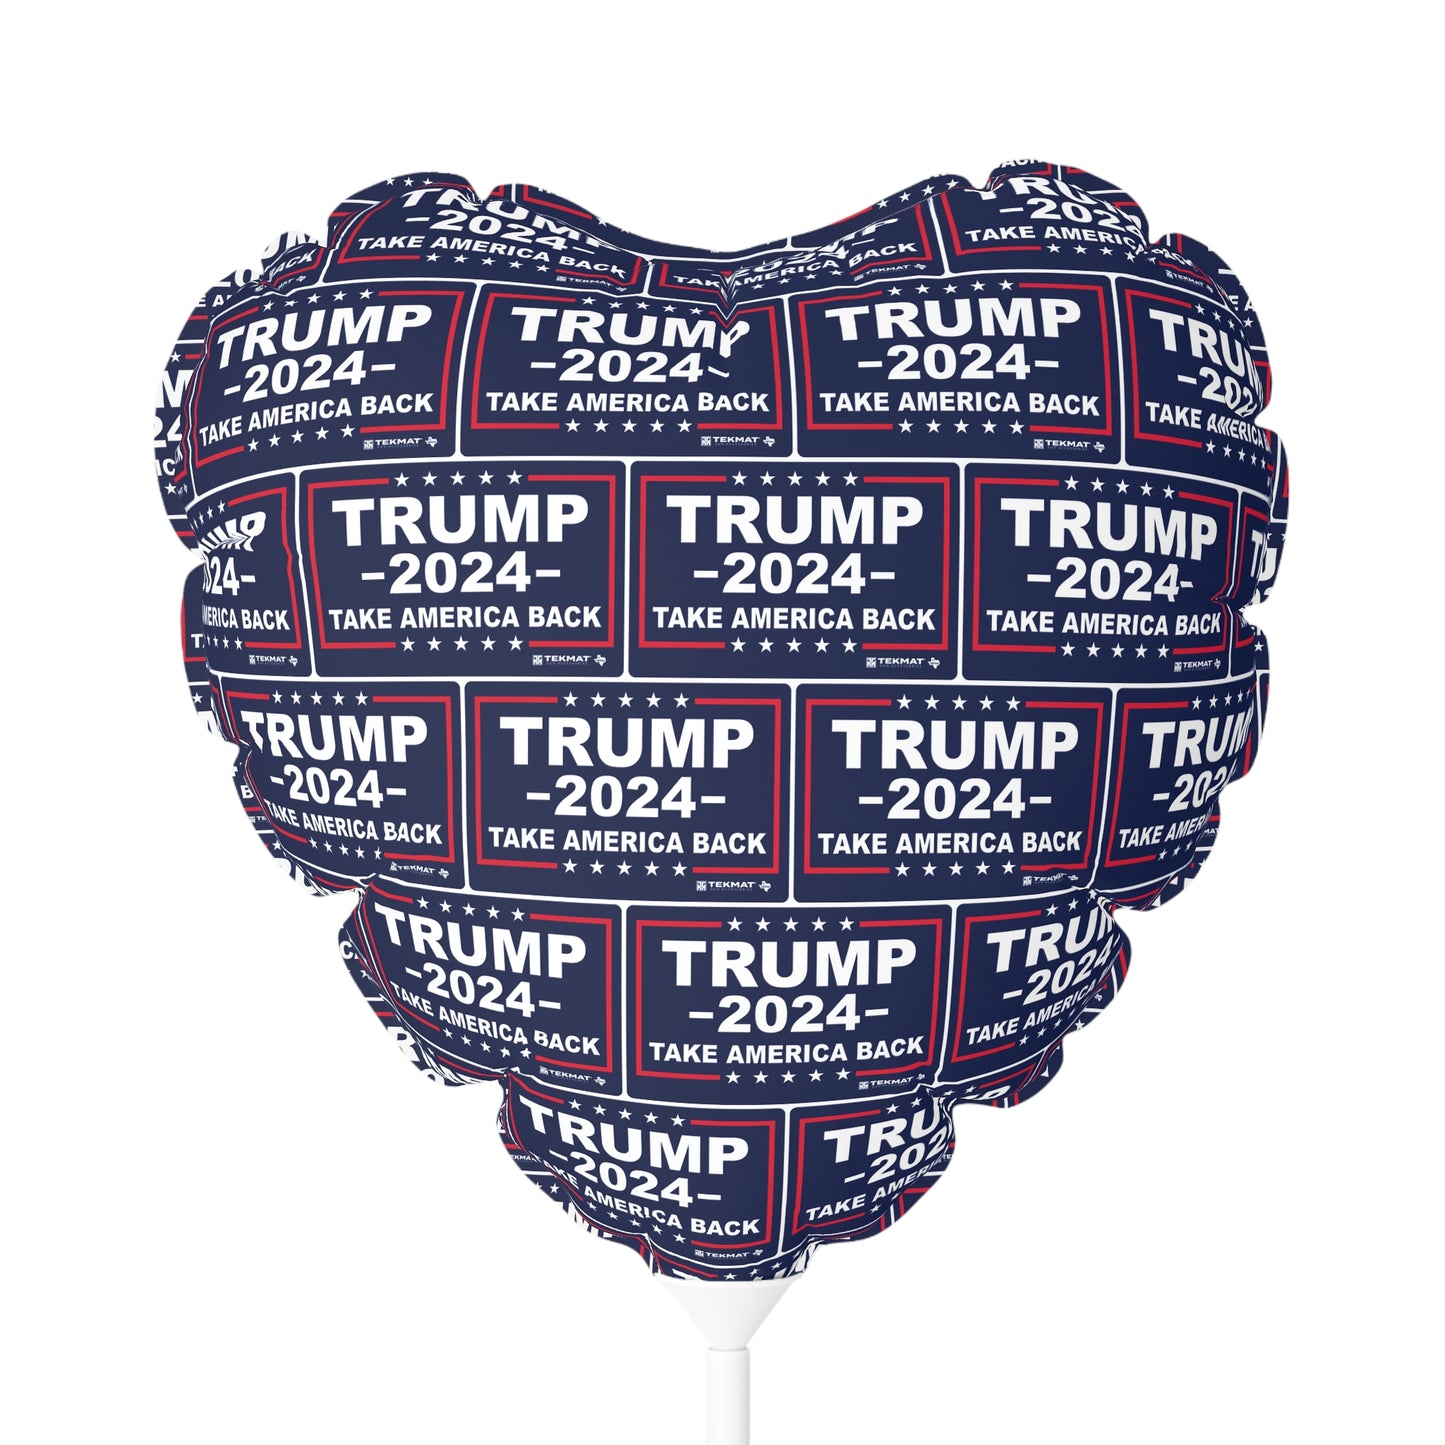 Ich liebe dich, wie TRUMP AMERICA liebt. Ballon (rund und herzförmig), 11"